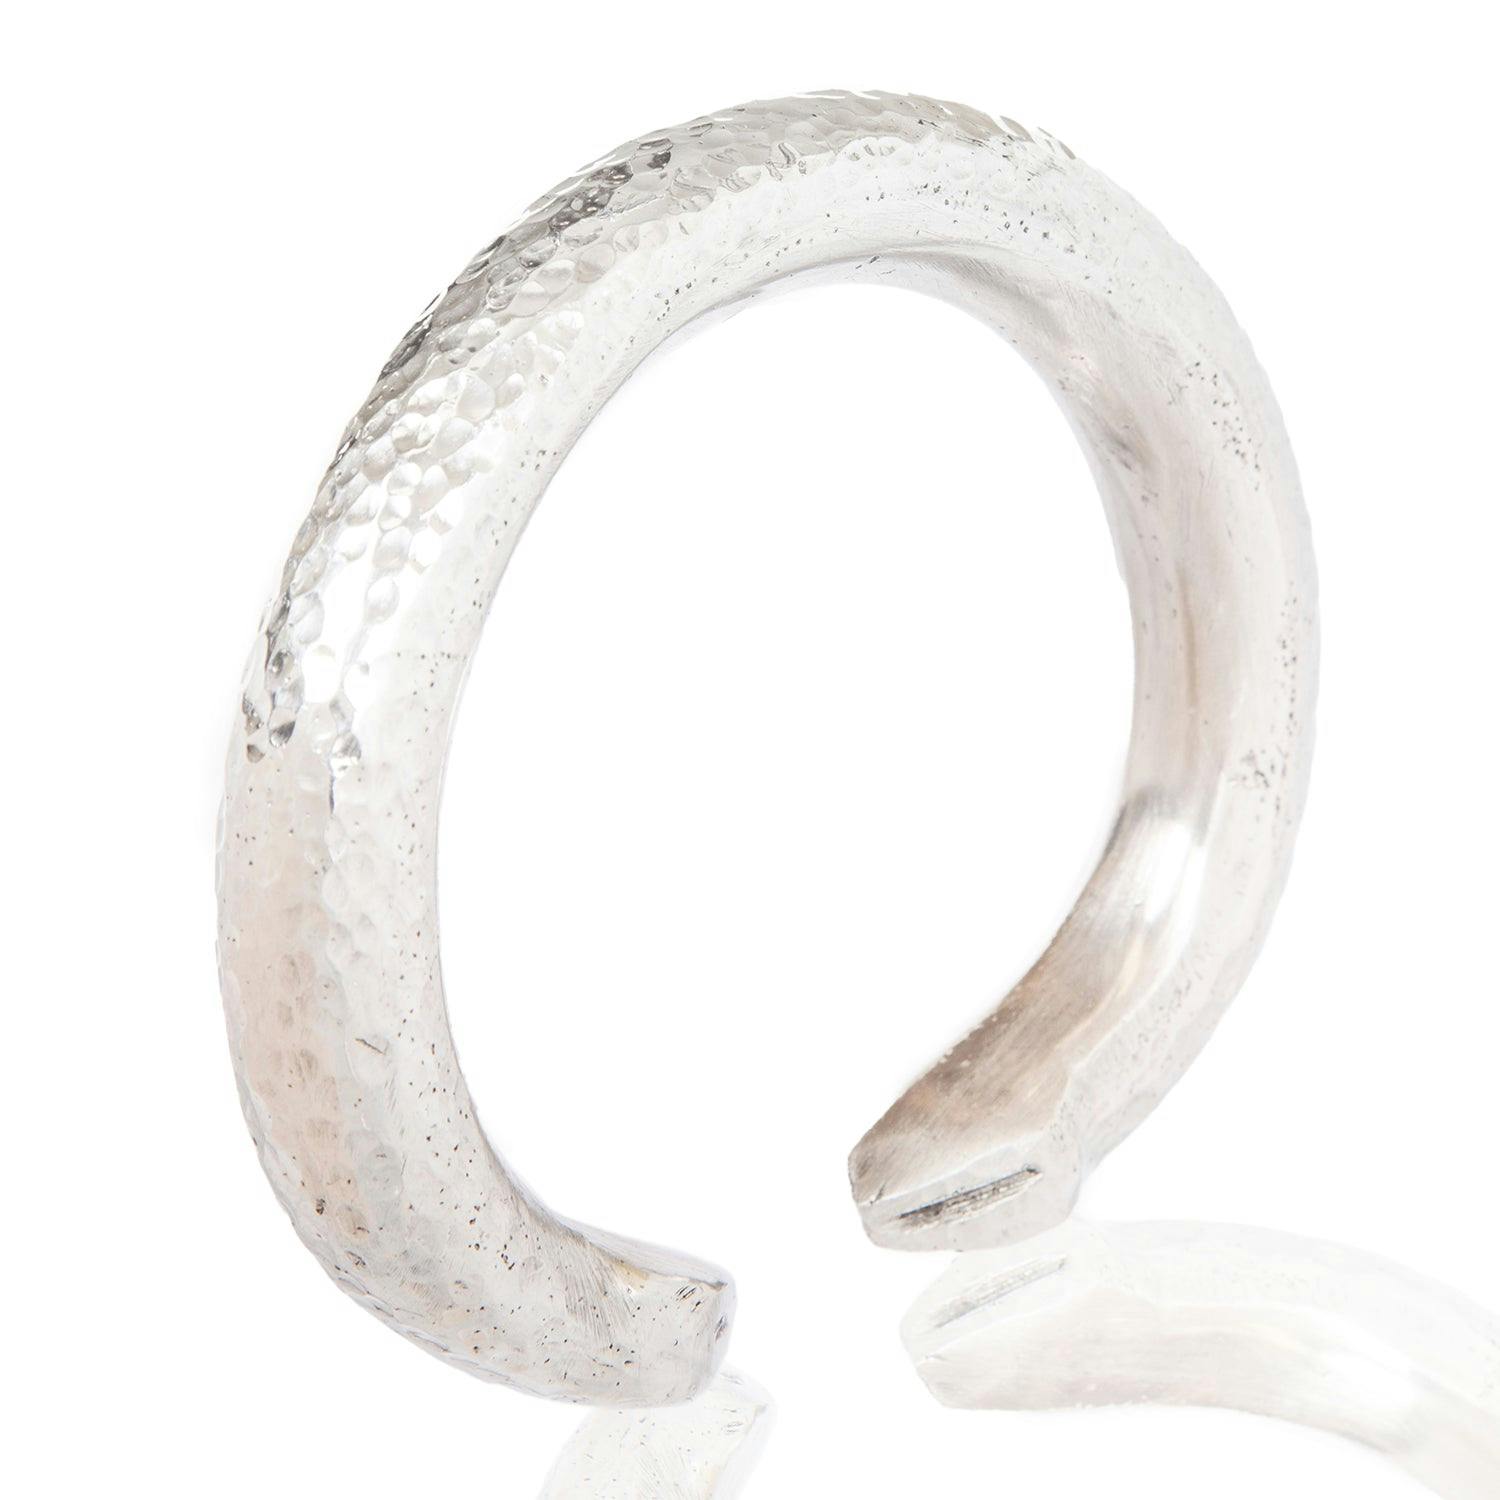 Milele Bracelet, a product by Adele Dejak